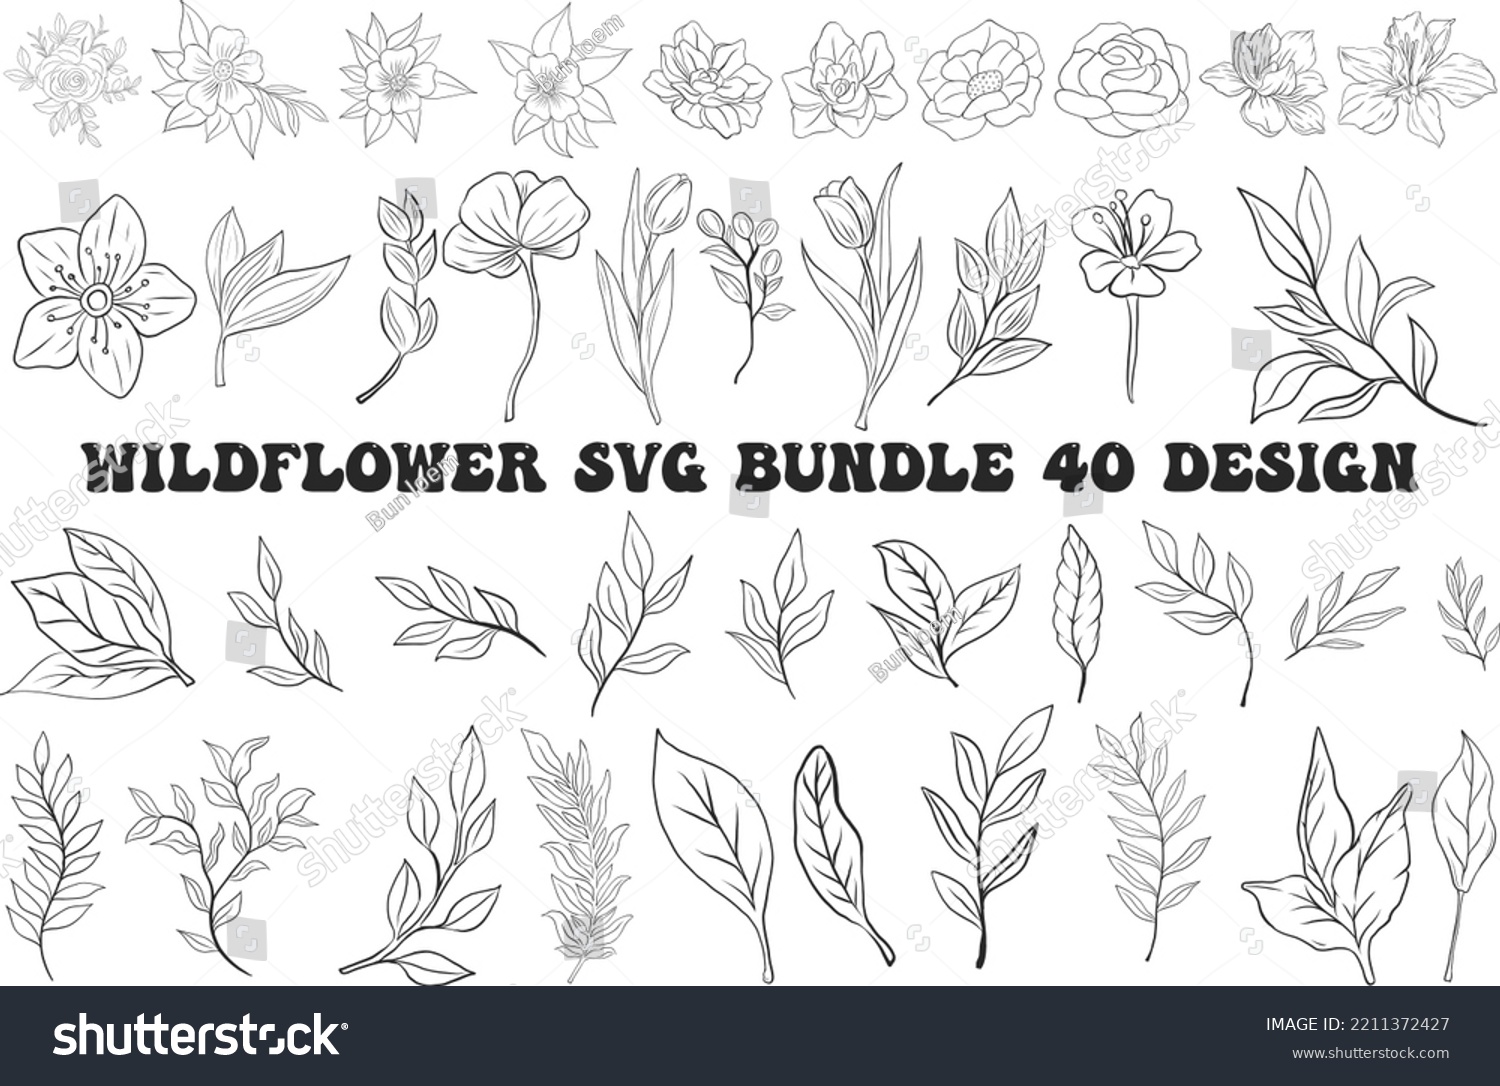 SVG of wildflower svg bundle 40 design,floral arrangement svg, svg